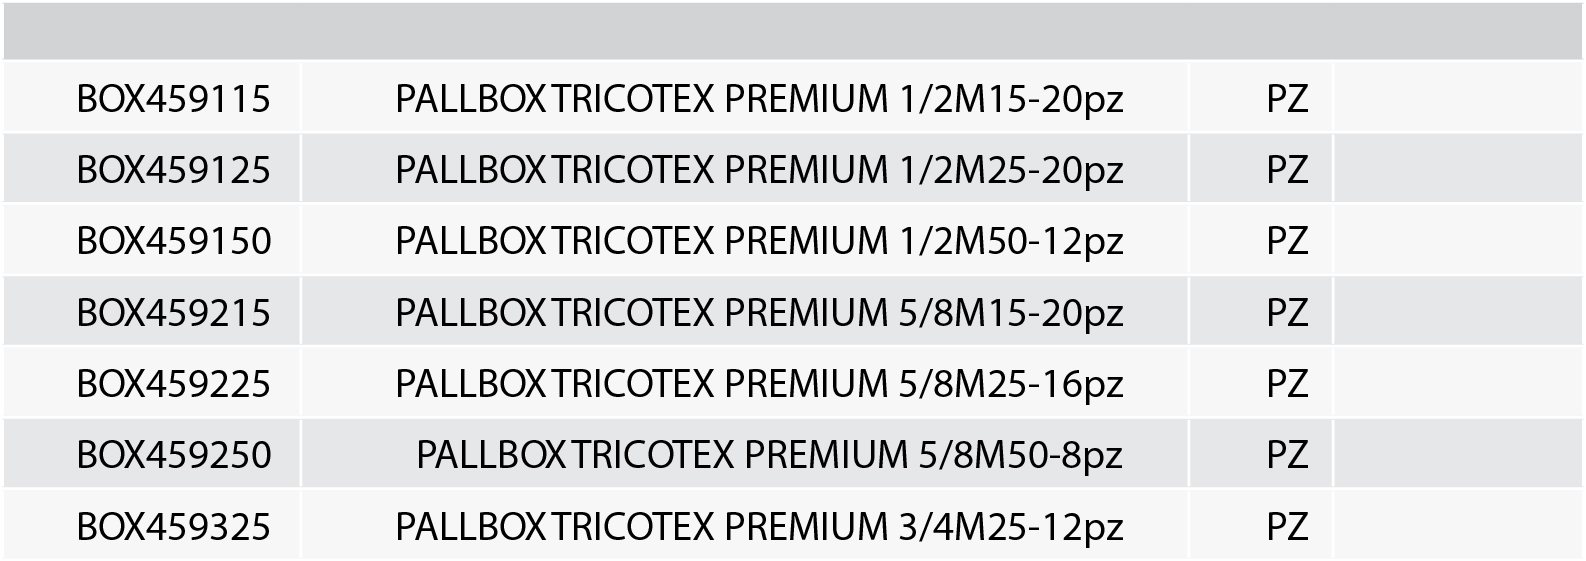 pallbox tricotex premium